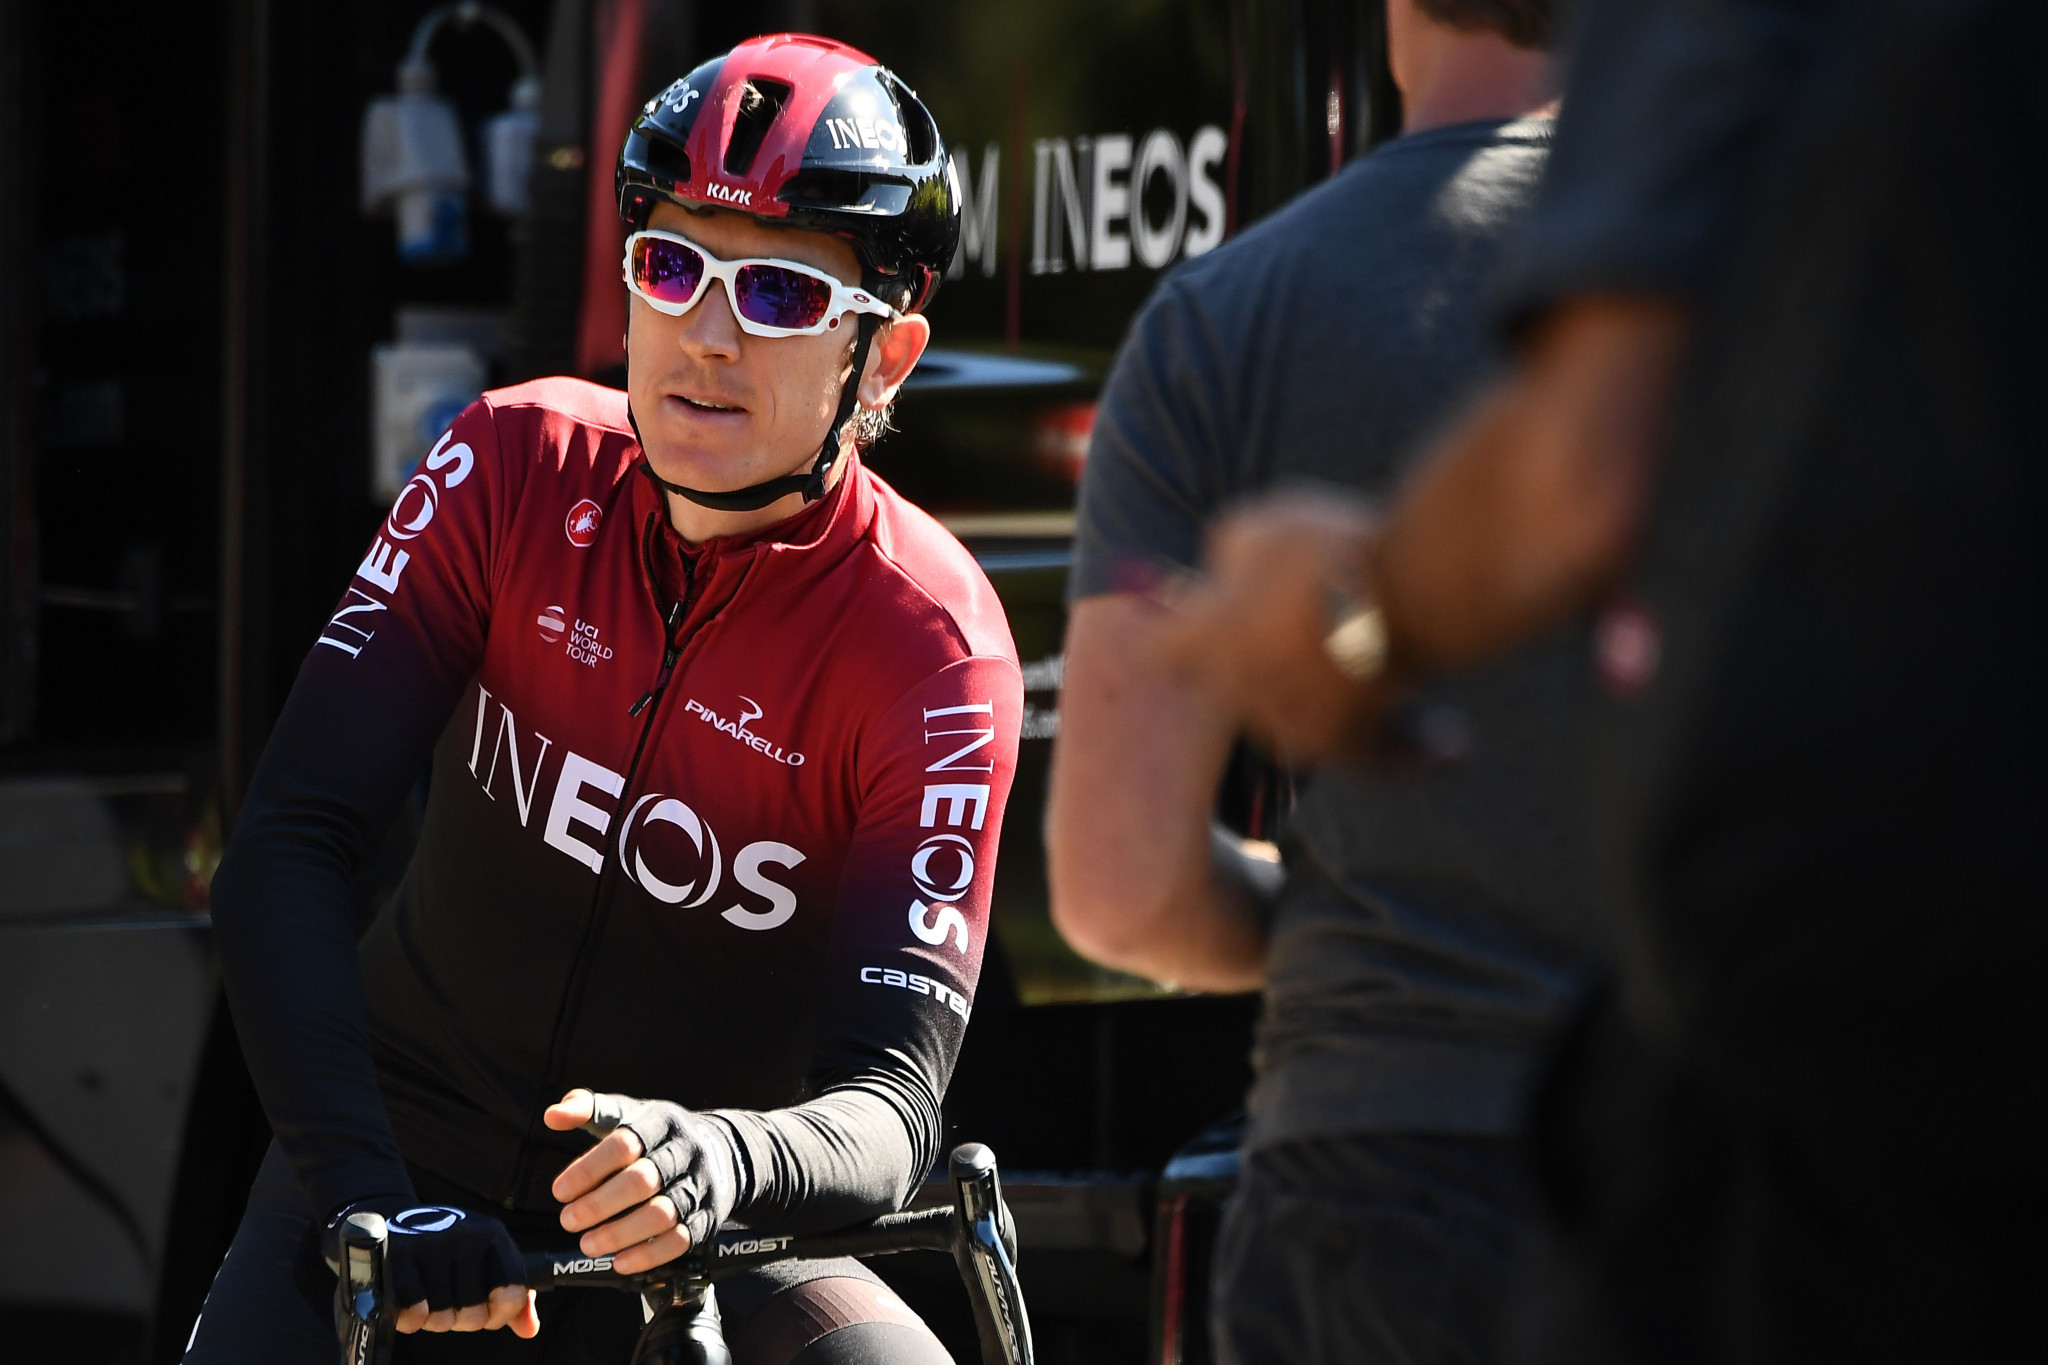 Geraint Thomas is bidding to retain the Tour de France ©Getty Images